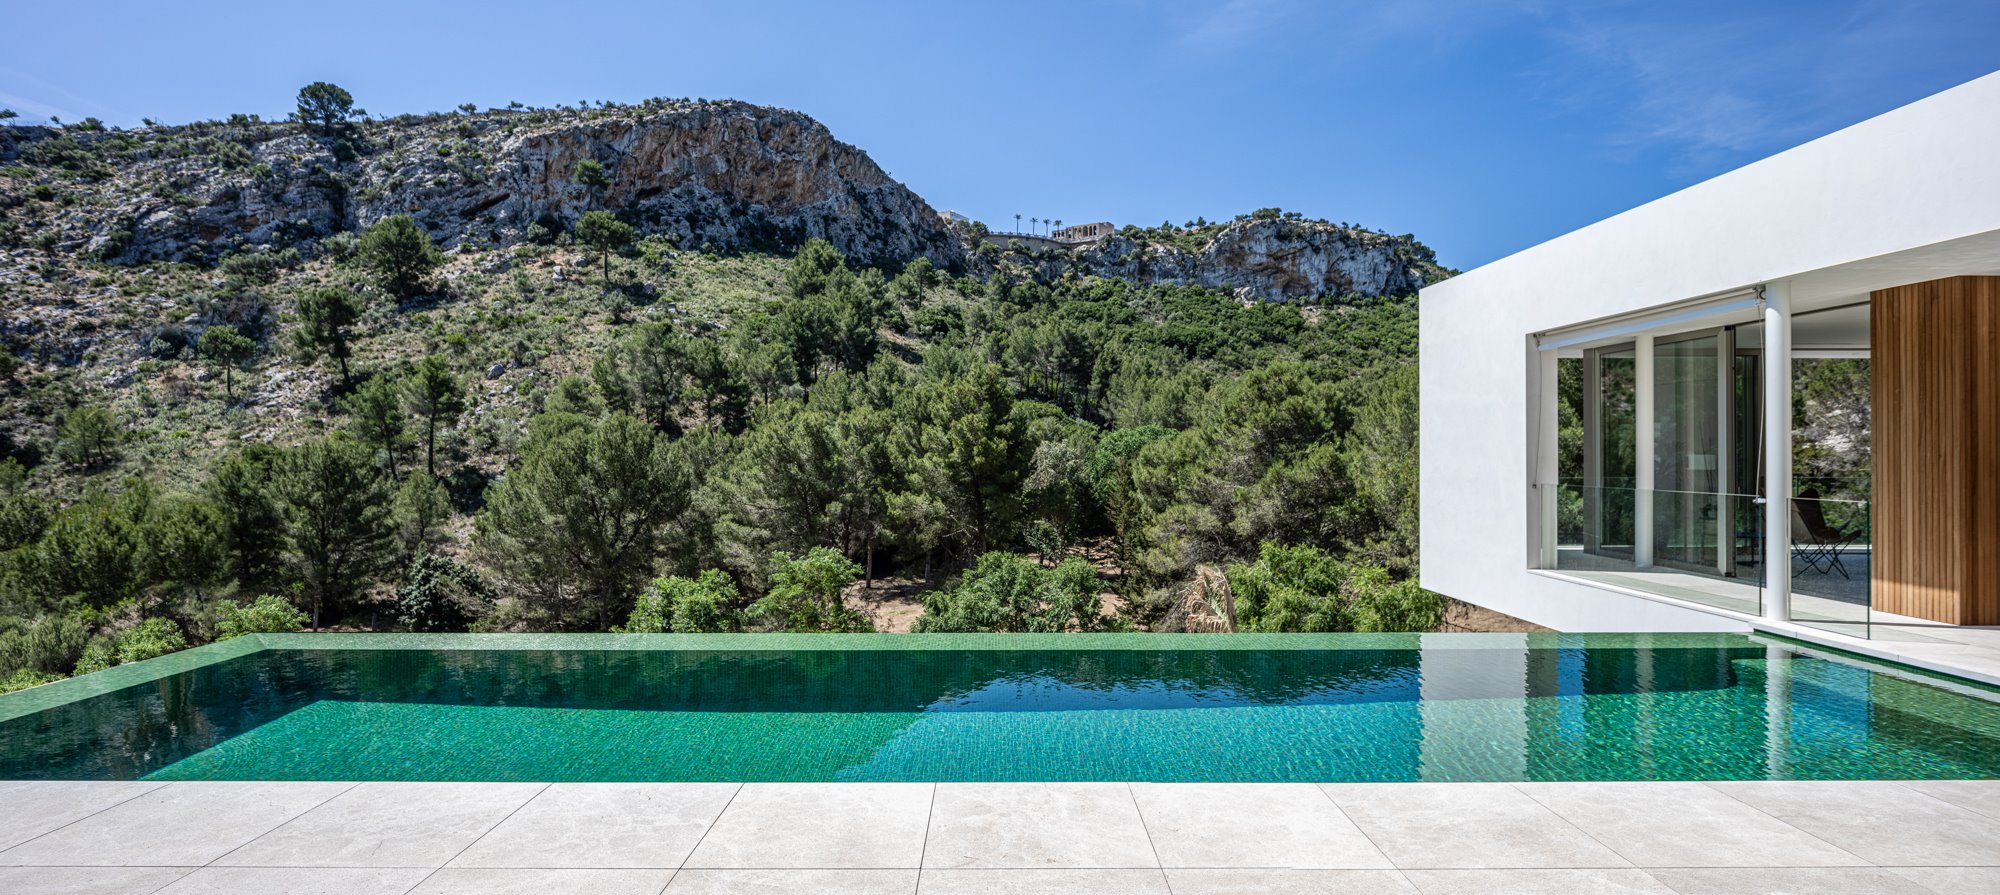 Piscina casa diseñada por Jorge Bibiloni en Mallorca